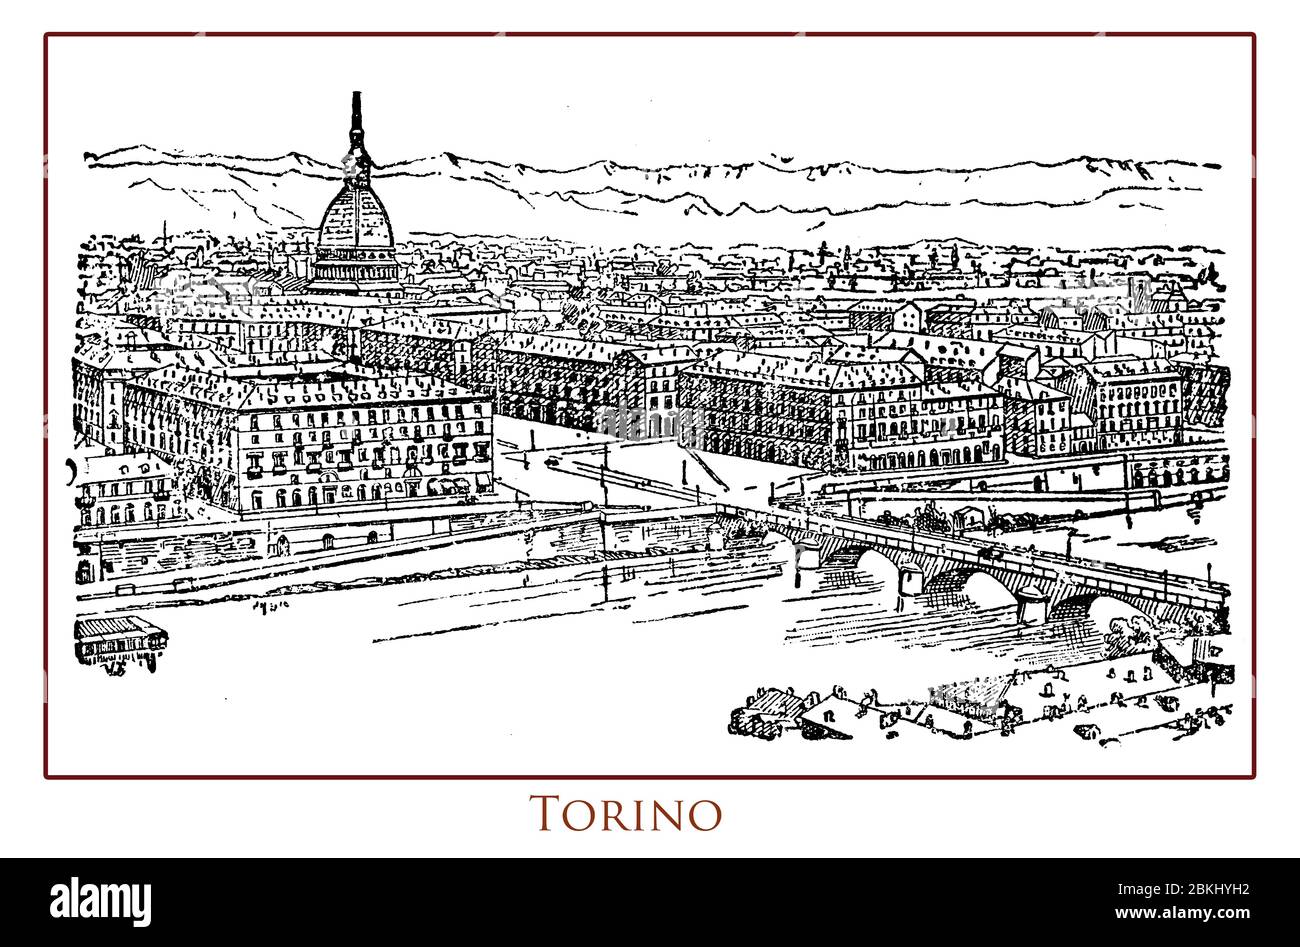 Tavolo illustrato d'epoca con vista panoramica sulla città di Torino importante centro commerciale e culturale dell'Italia settentrionale situato sulle rive del po e circondato dall'arco alpino delle montagne Foto Stock